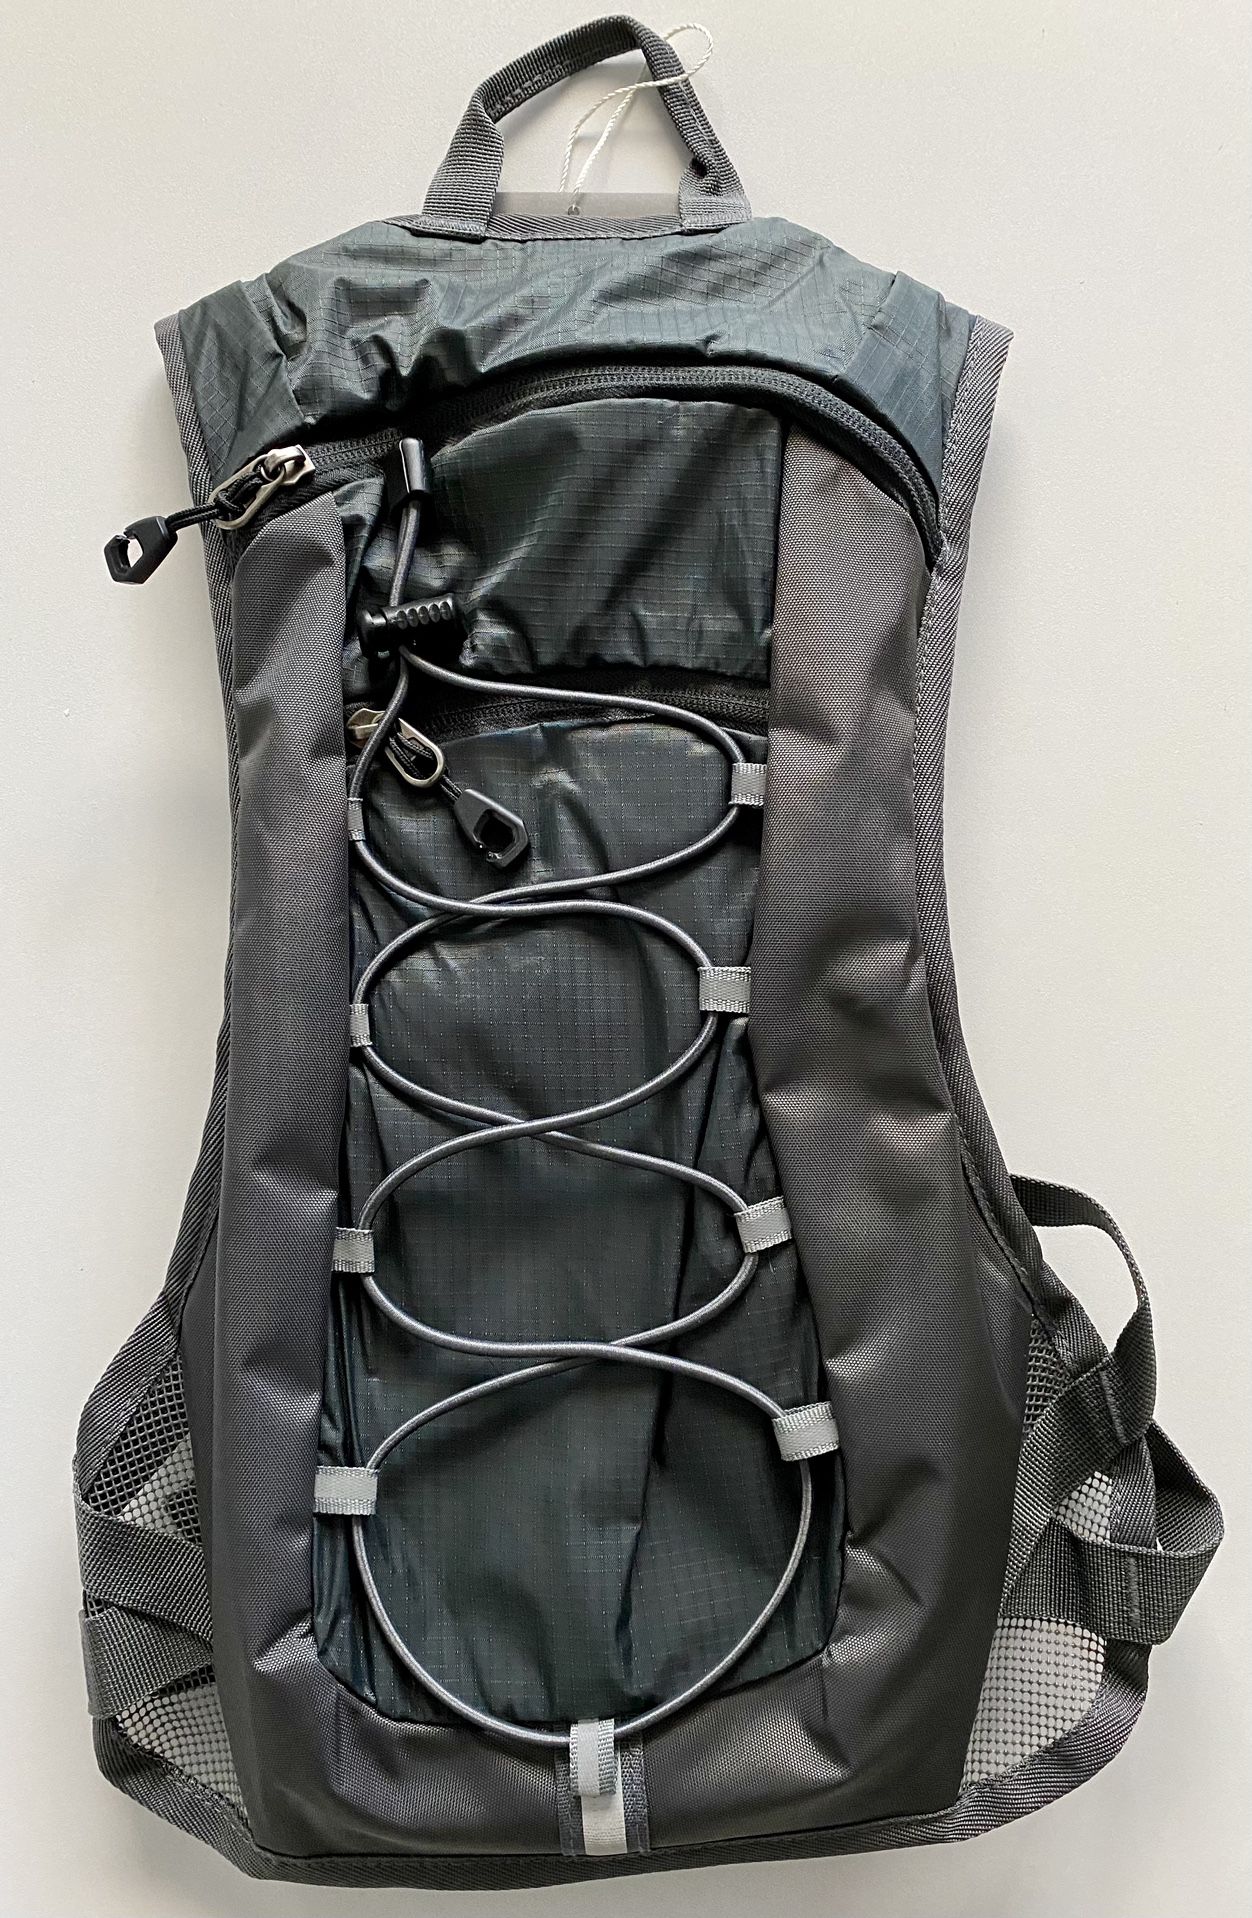 Unigear Hydration Backpack (camelbak) — $20